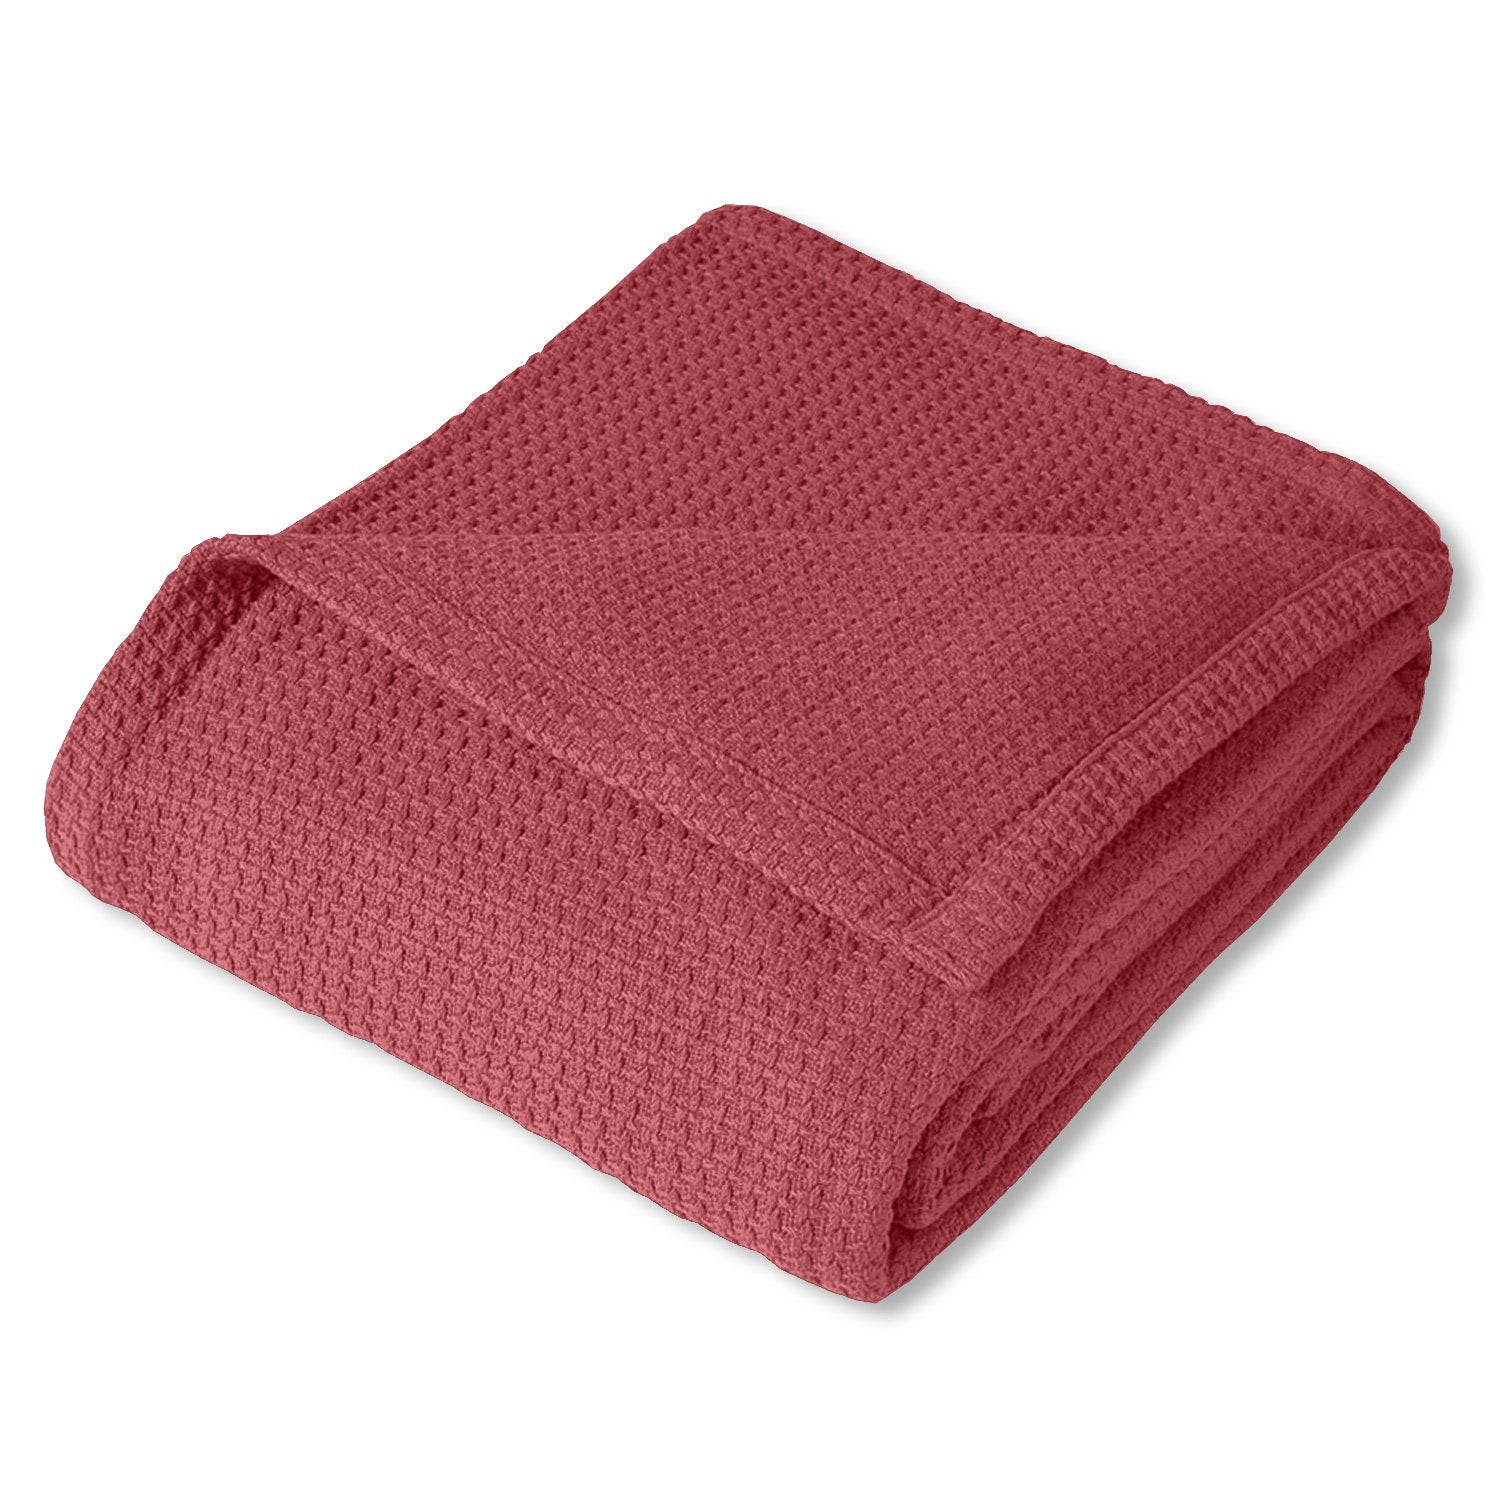 Basket Weave Cotton Blanket Burgundy - Folded